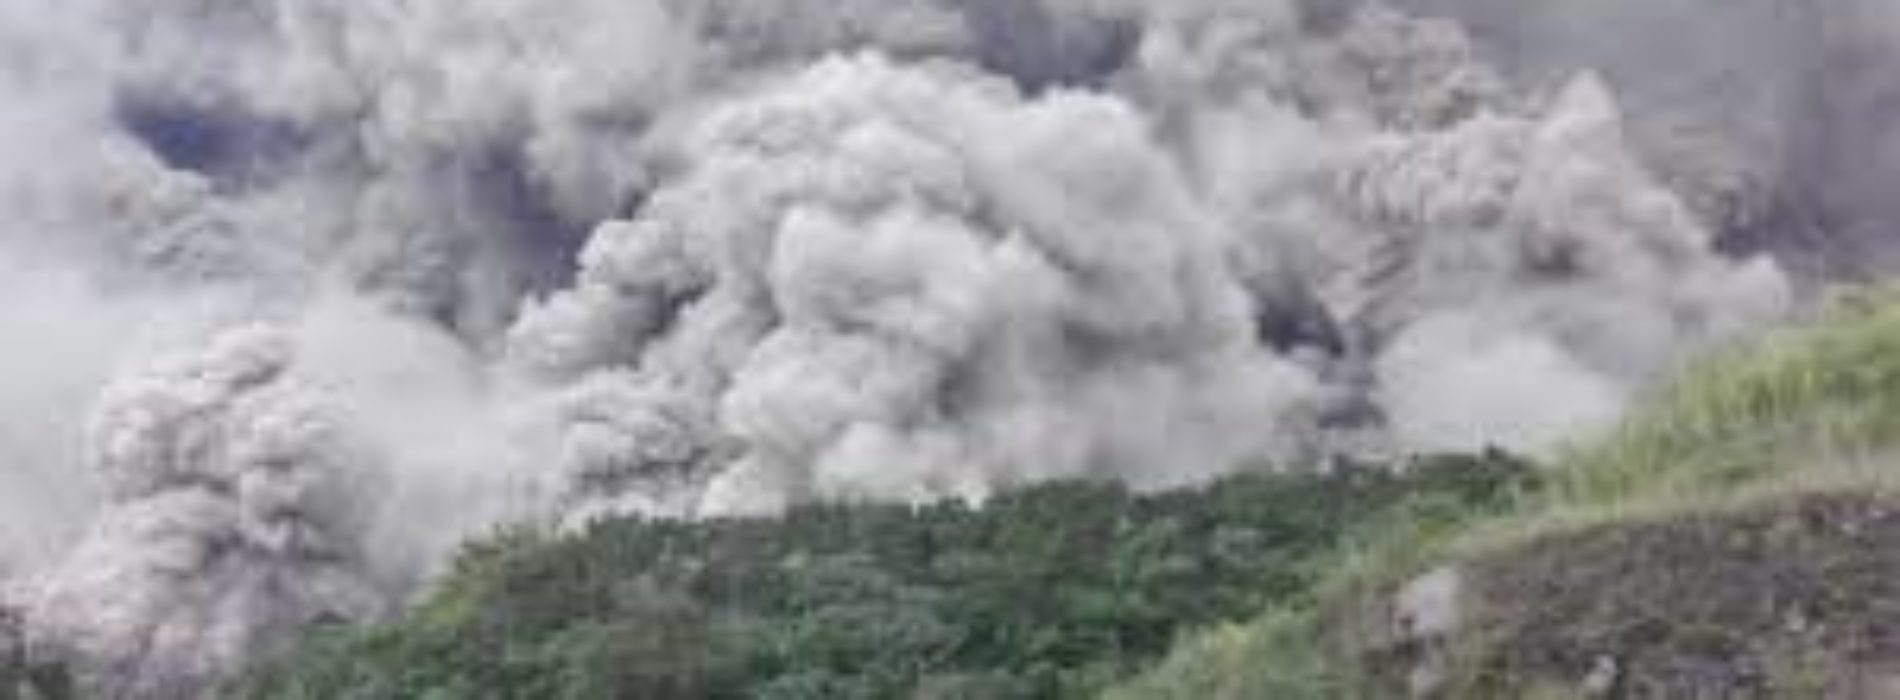 Erupción del volcán de Fuego en Guatemala no afectará
Oaxaca: CEPCO